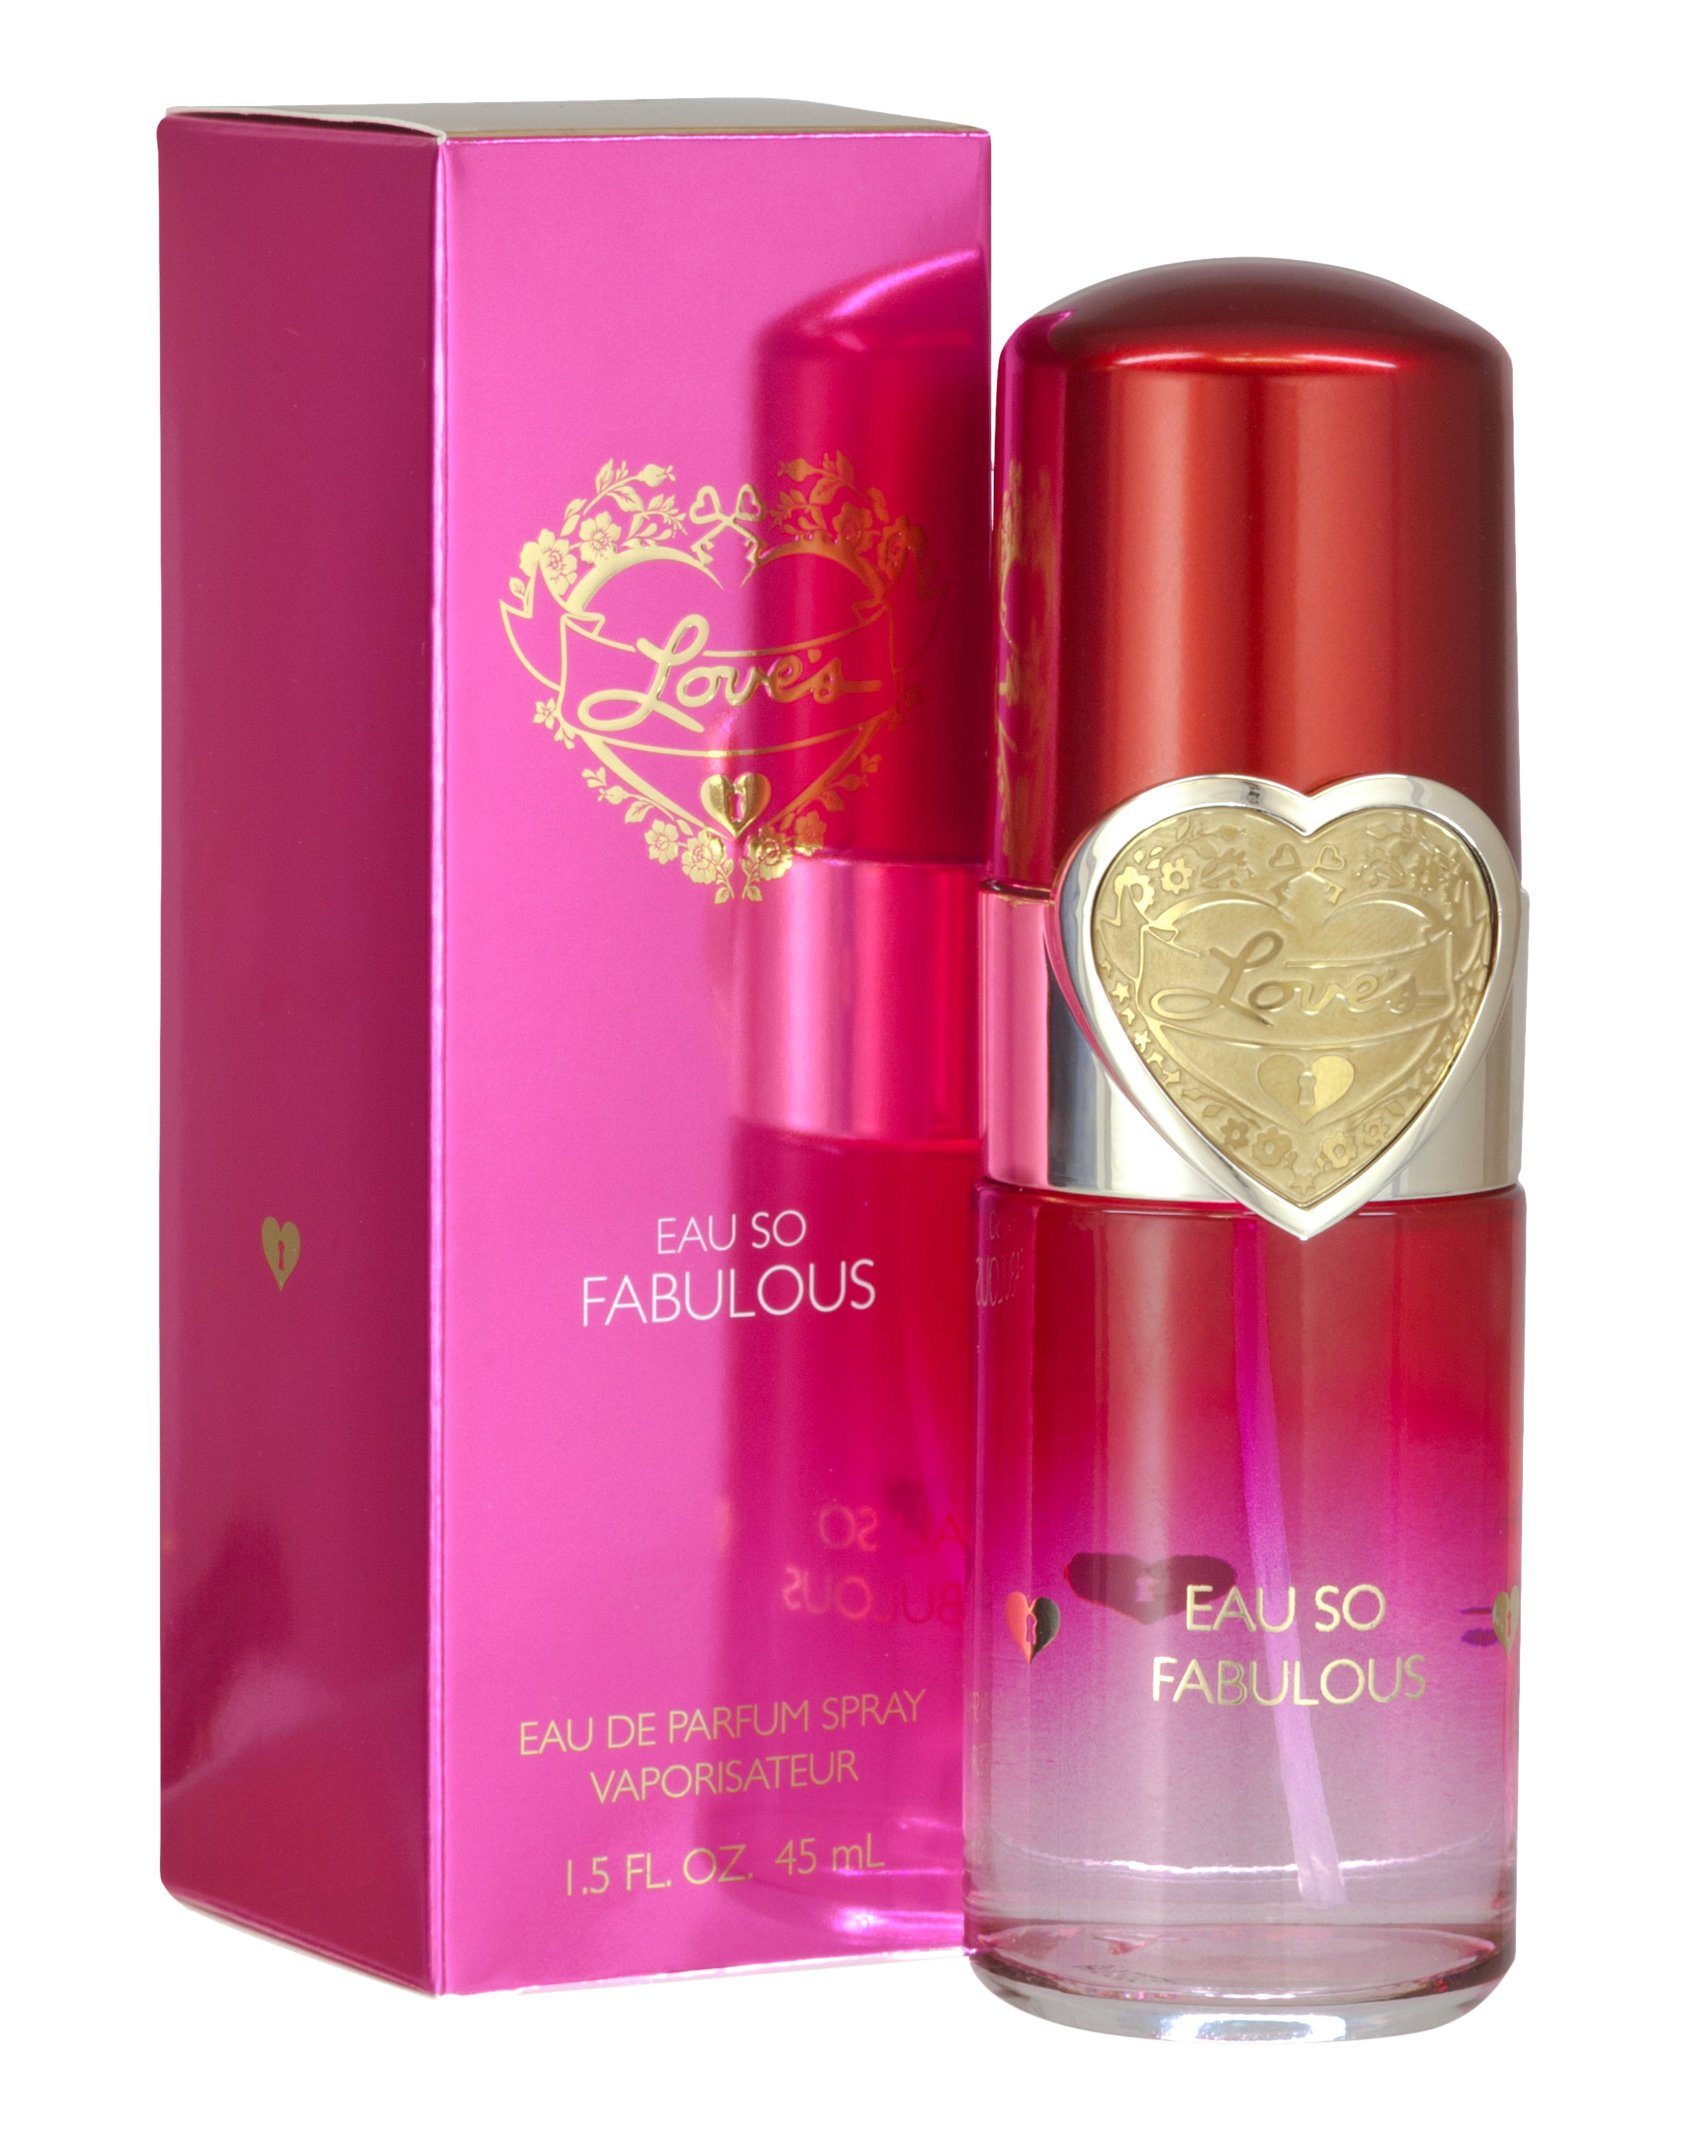 LOVE'S EAU SO FABULOUS 1.5 fl. oz. EAU DE PARFUM By DANA CLASSIC FRAGRANCES